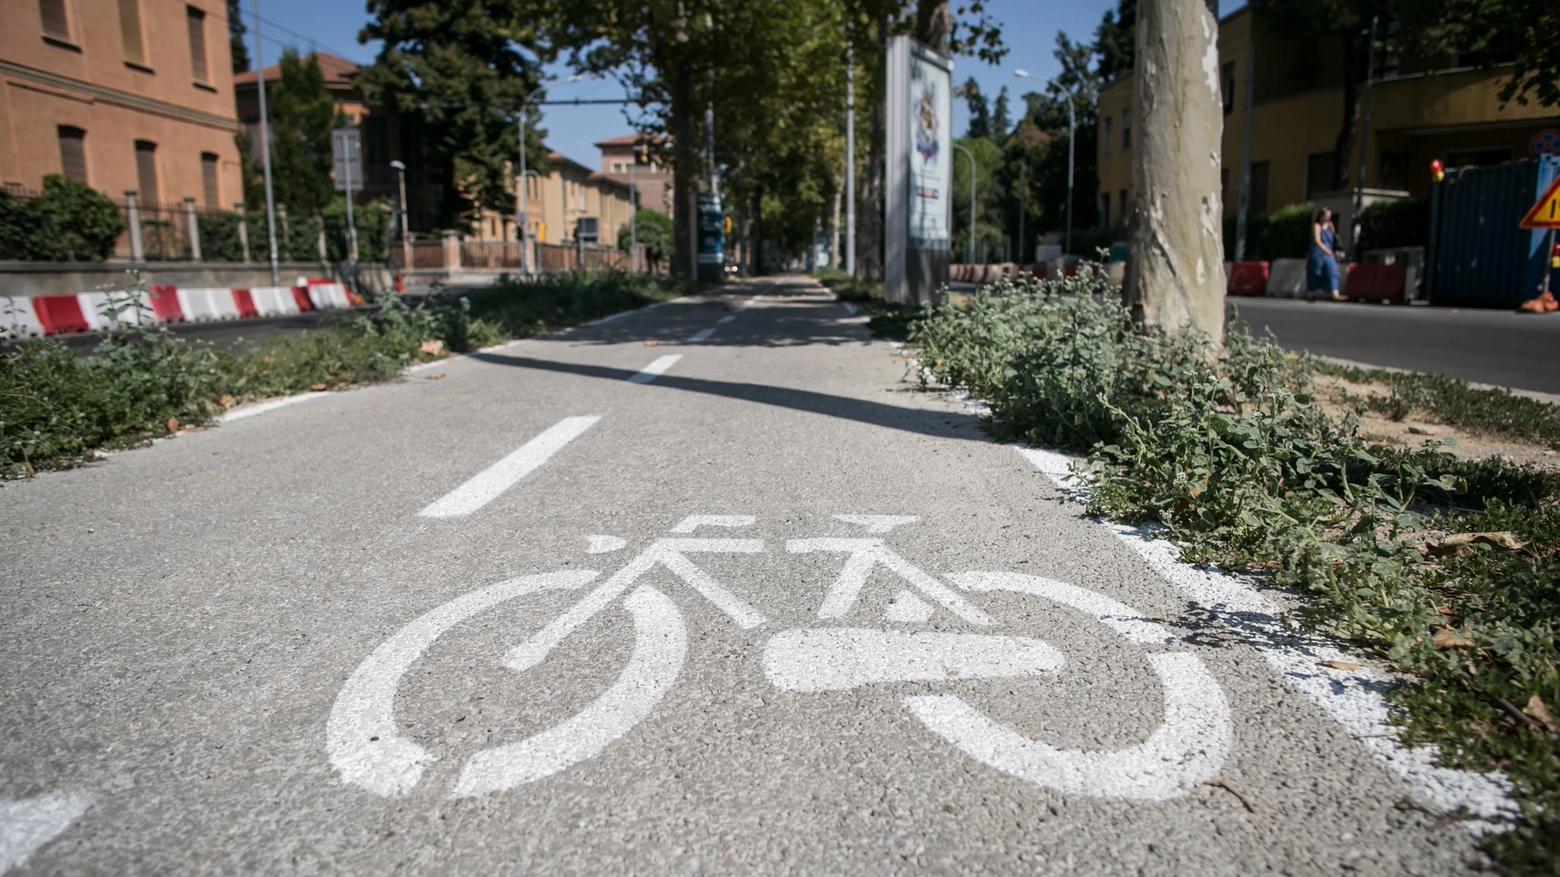 L’articolo 182 si concentra sulle corsie riservate a chi va in bicicletta: ecco le sanzioni per chi non rispetta la legge. Multe, sanzioni ed eccezioni: tutto quello che c’è da sapere